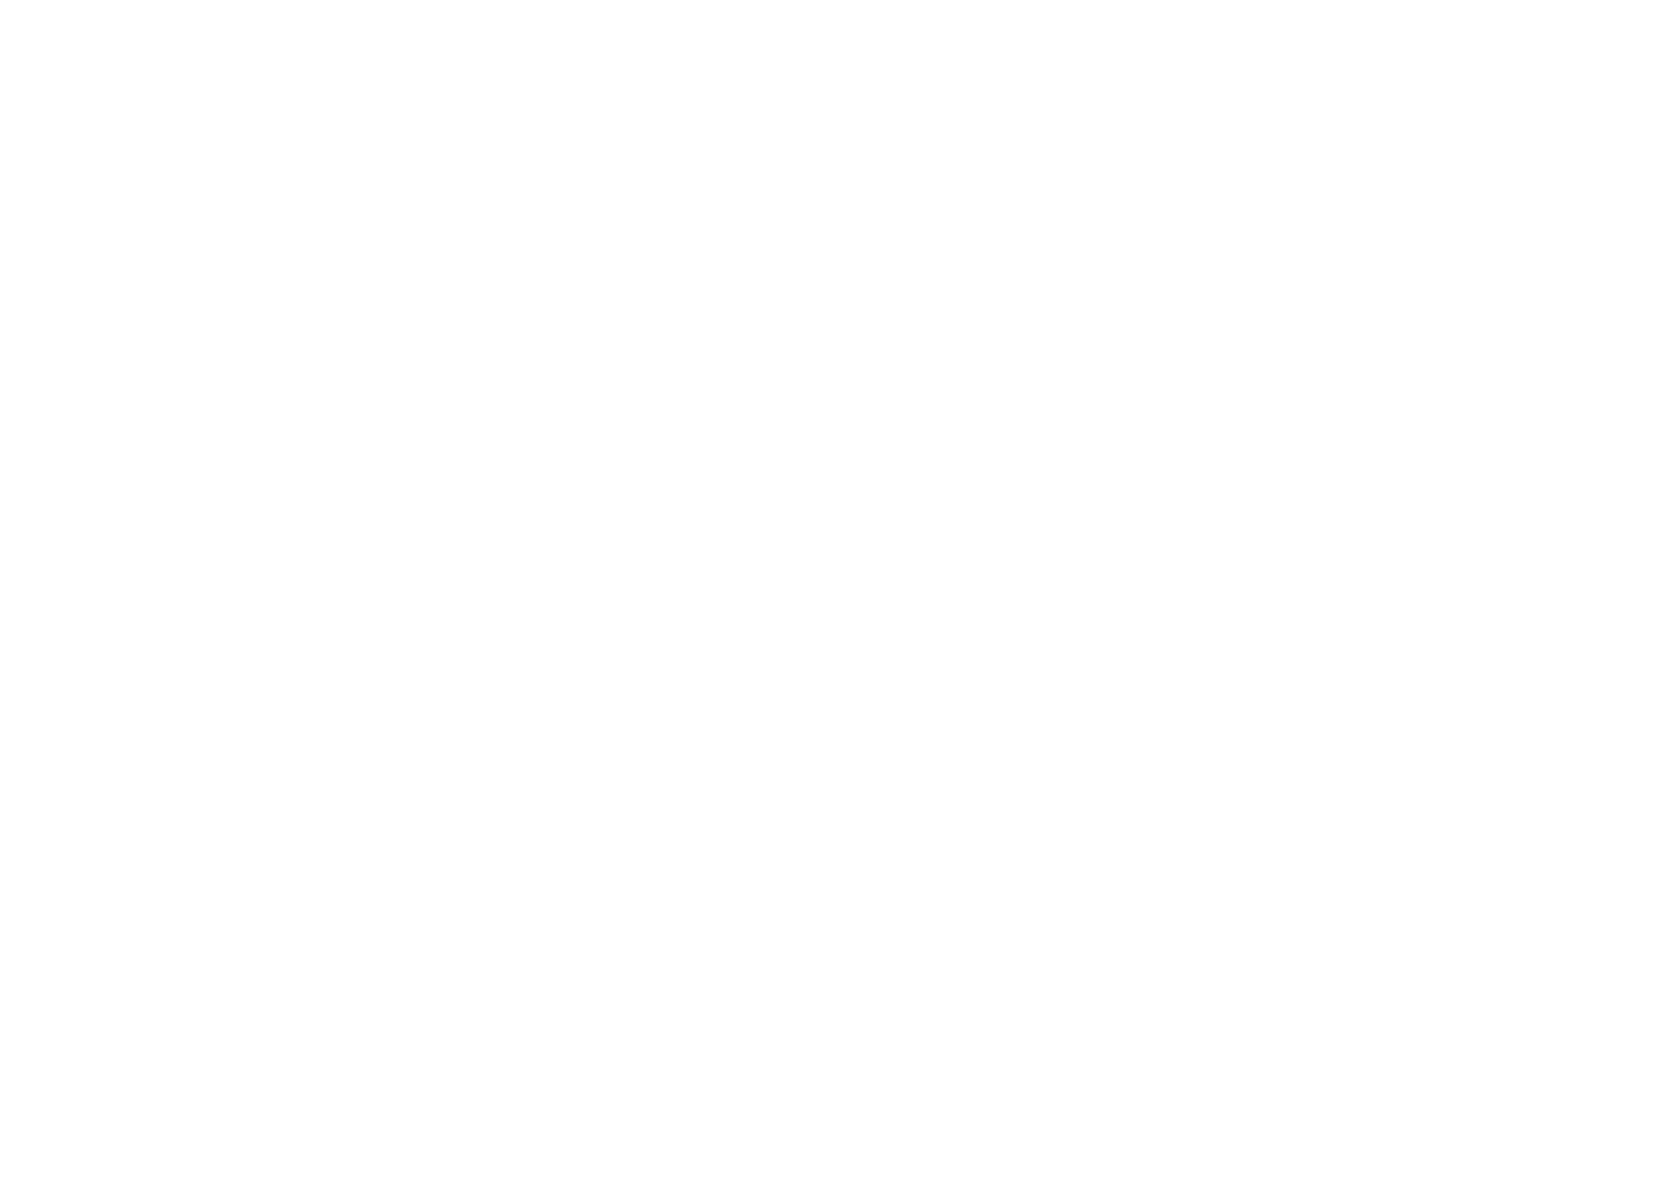 CSN Mineração logo for dark backgrounds (transparent PNG)